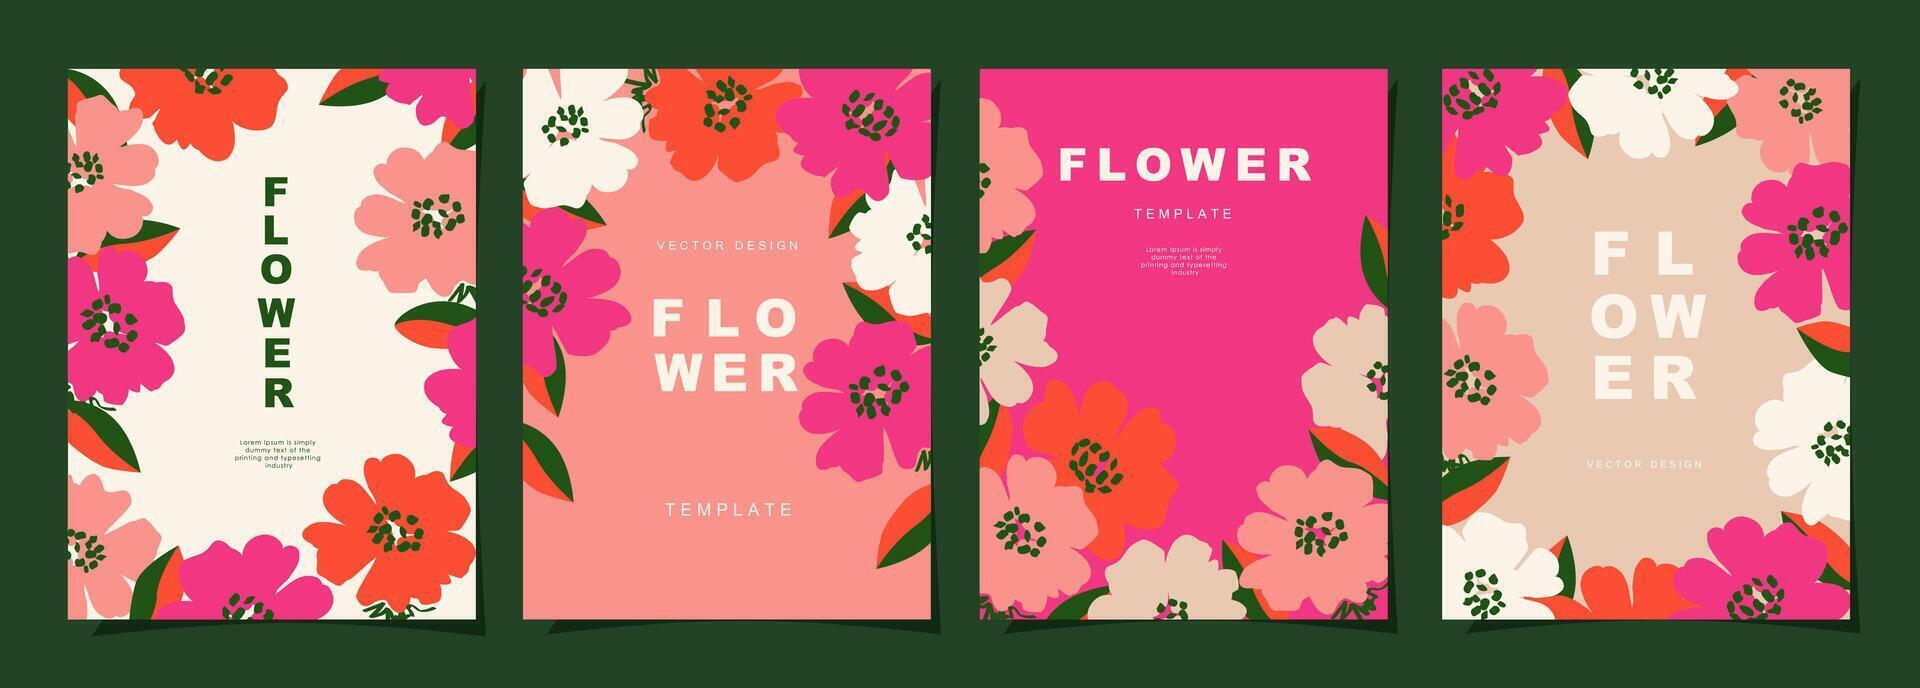 blommig mall uppsättning för affisch, kort, omslag, vägg konst, baner i modern minimalistisk stil och enkel sommar design mallar med blommor och växter. vektor